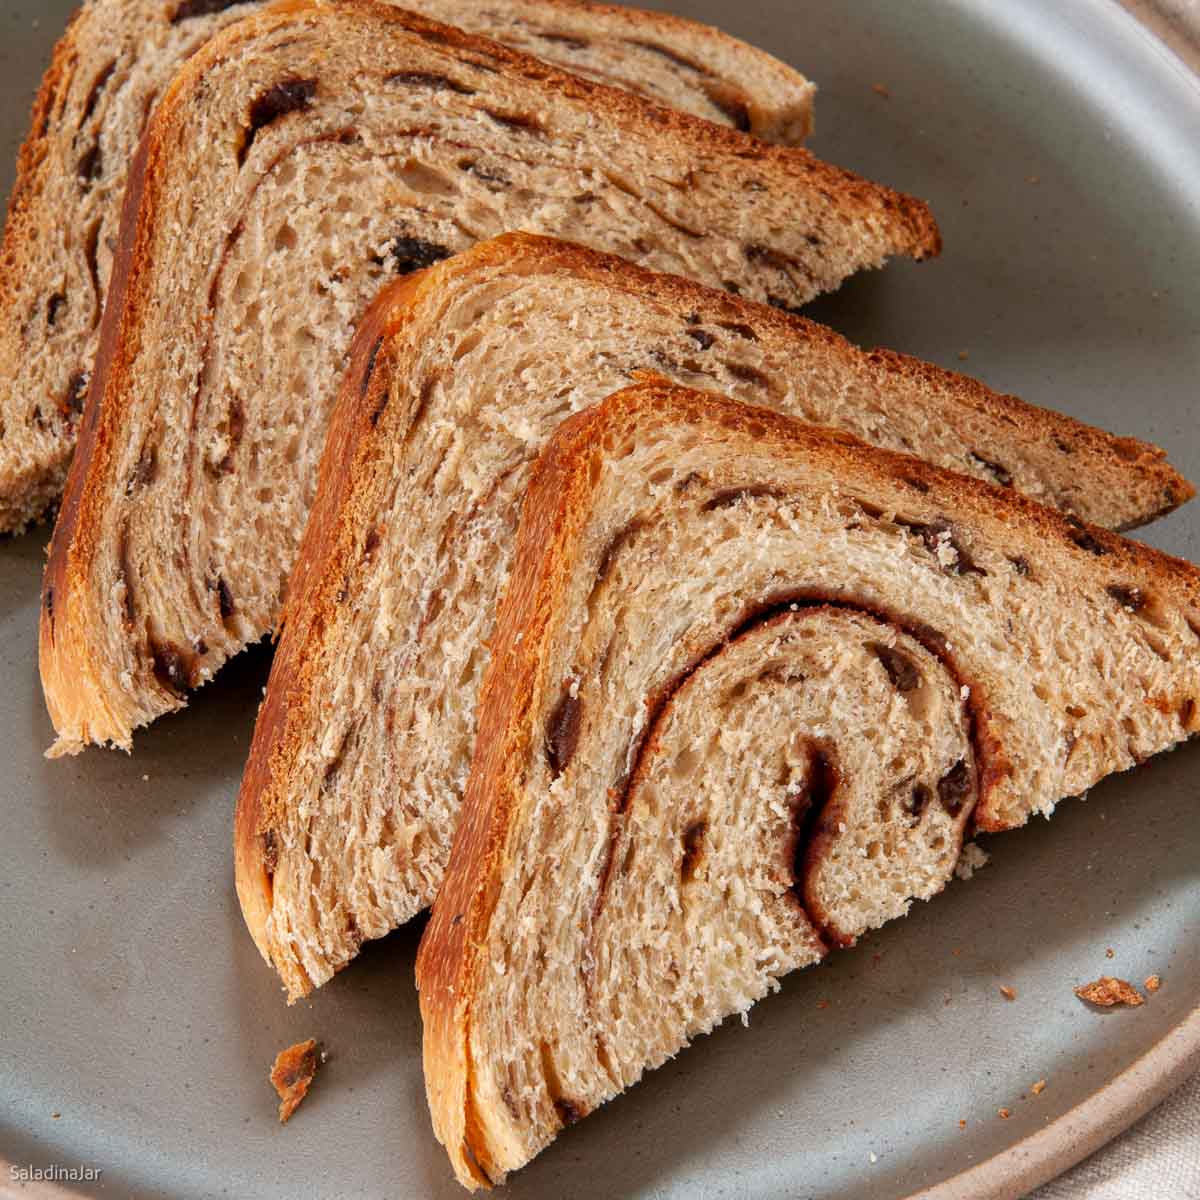 KBS bread machine - Pro Tips recipe bread machine 